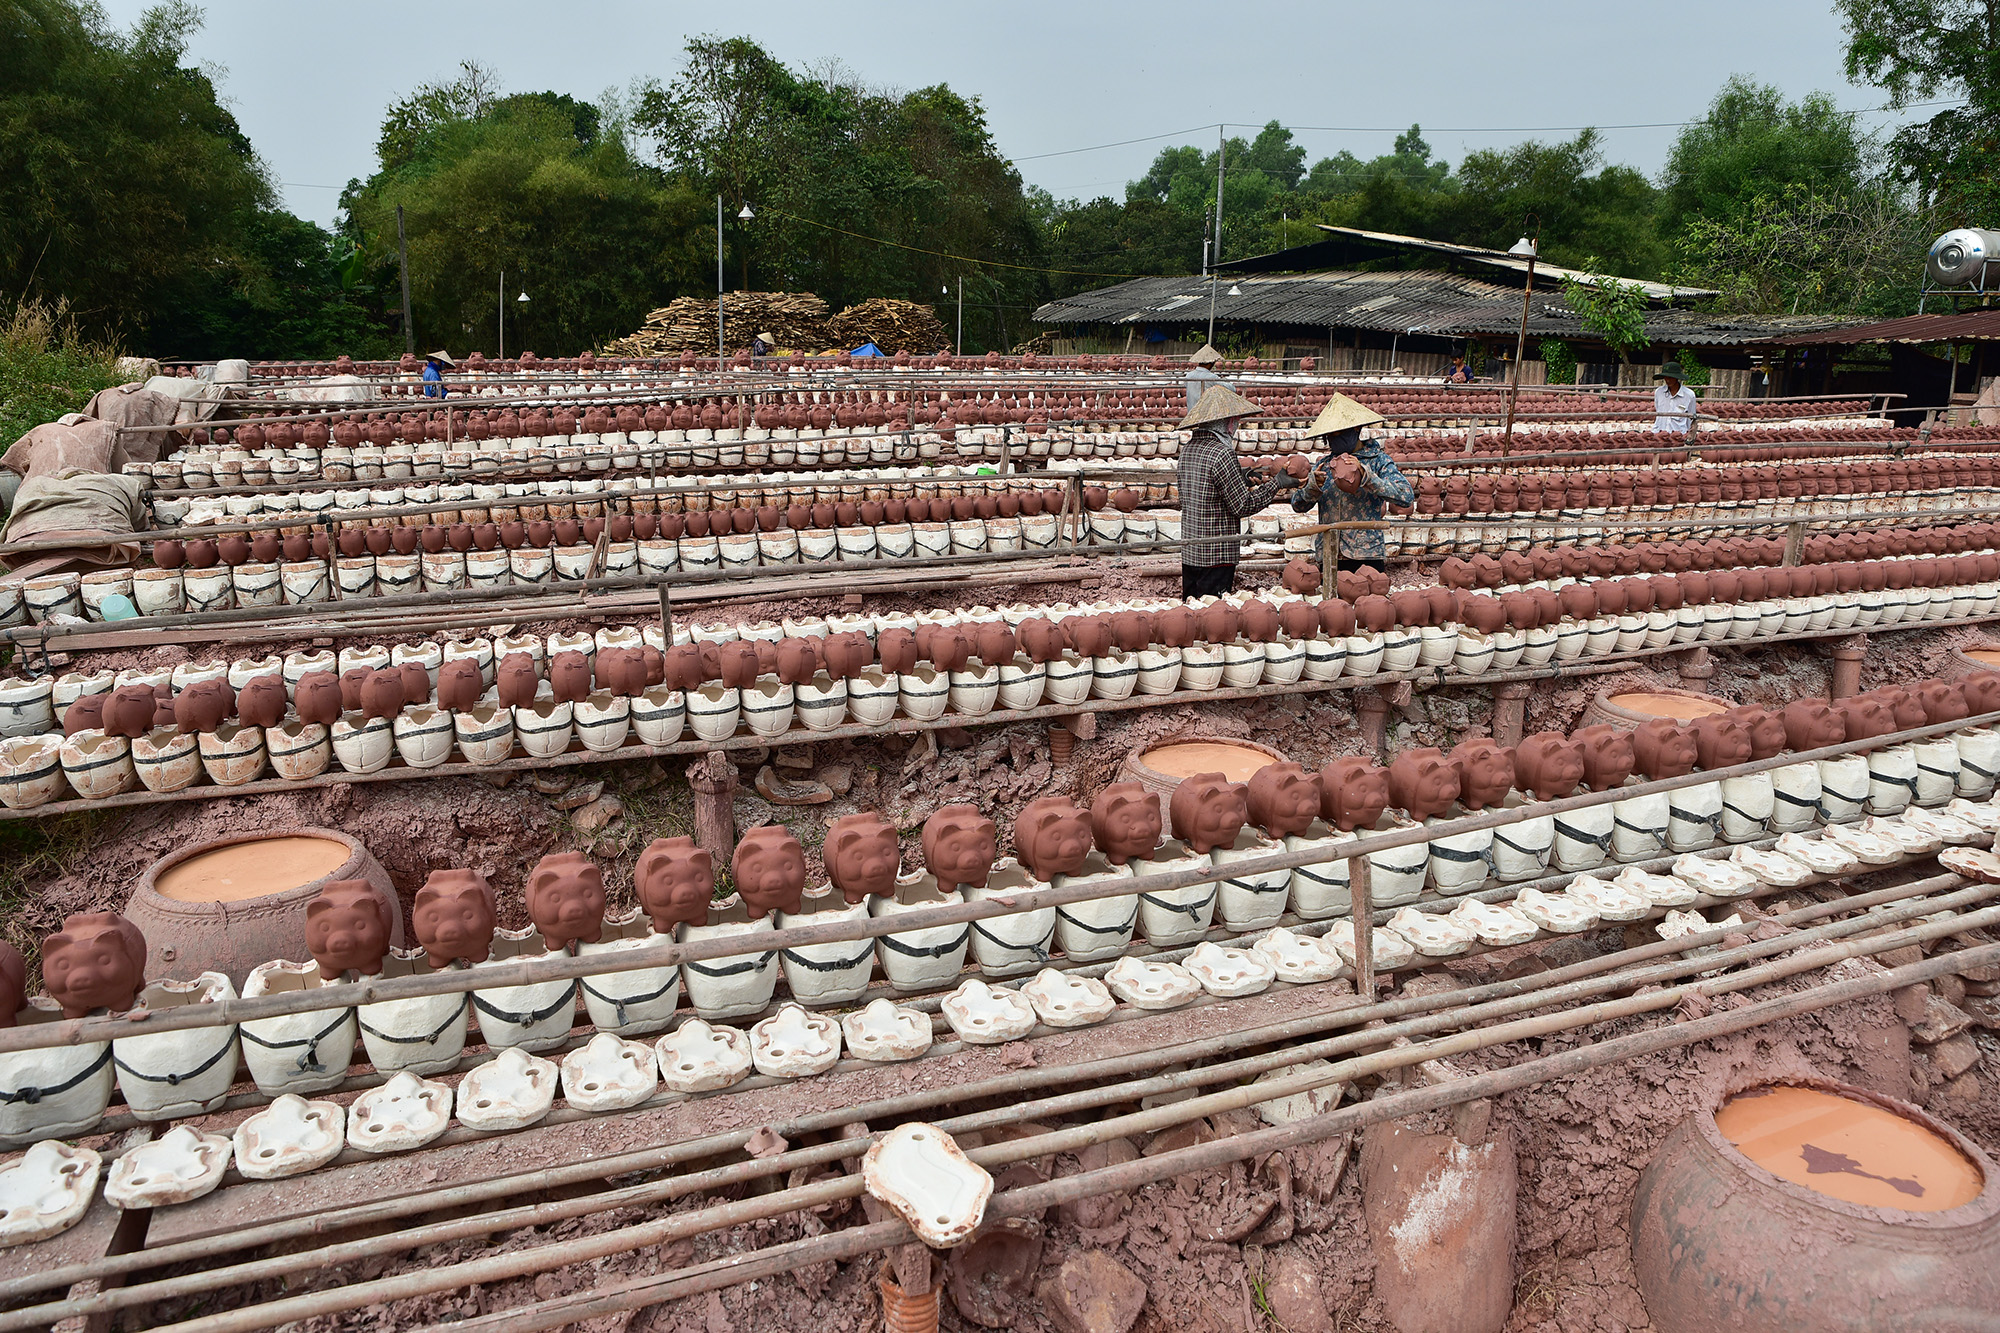 Gần 1 tháng đến Tết Nguyên đán, những lò gốm ở xã Tân Vĩnh Hiệp (thị xã Tân Uyên, Bình Dương) tấp nập sản xuất heo đất, hổ đất để chuyển hàng cho các xưởng gia công trên địa bàn tỉnh trang trí, xuất bán ra thị trường.